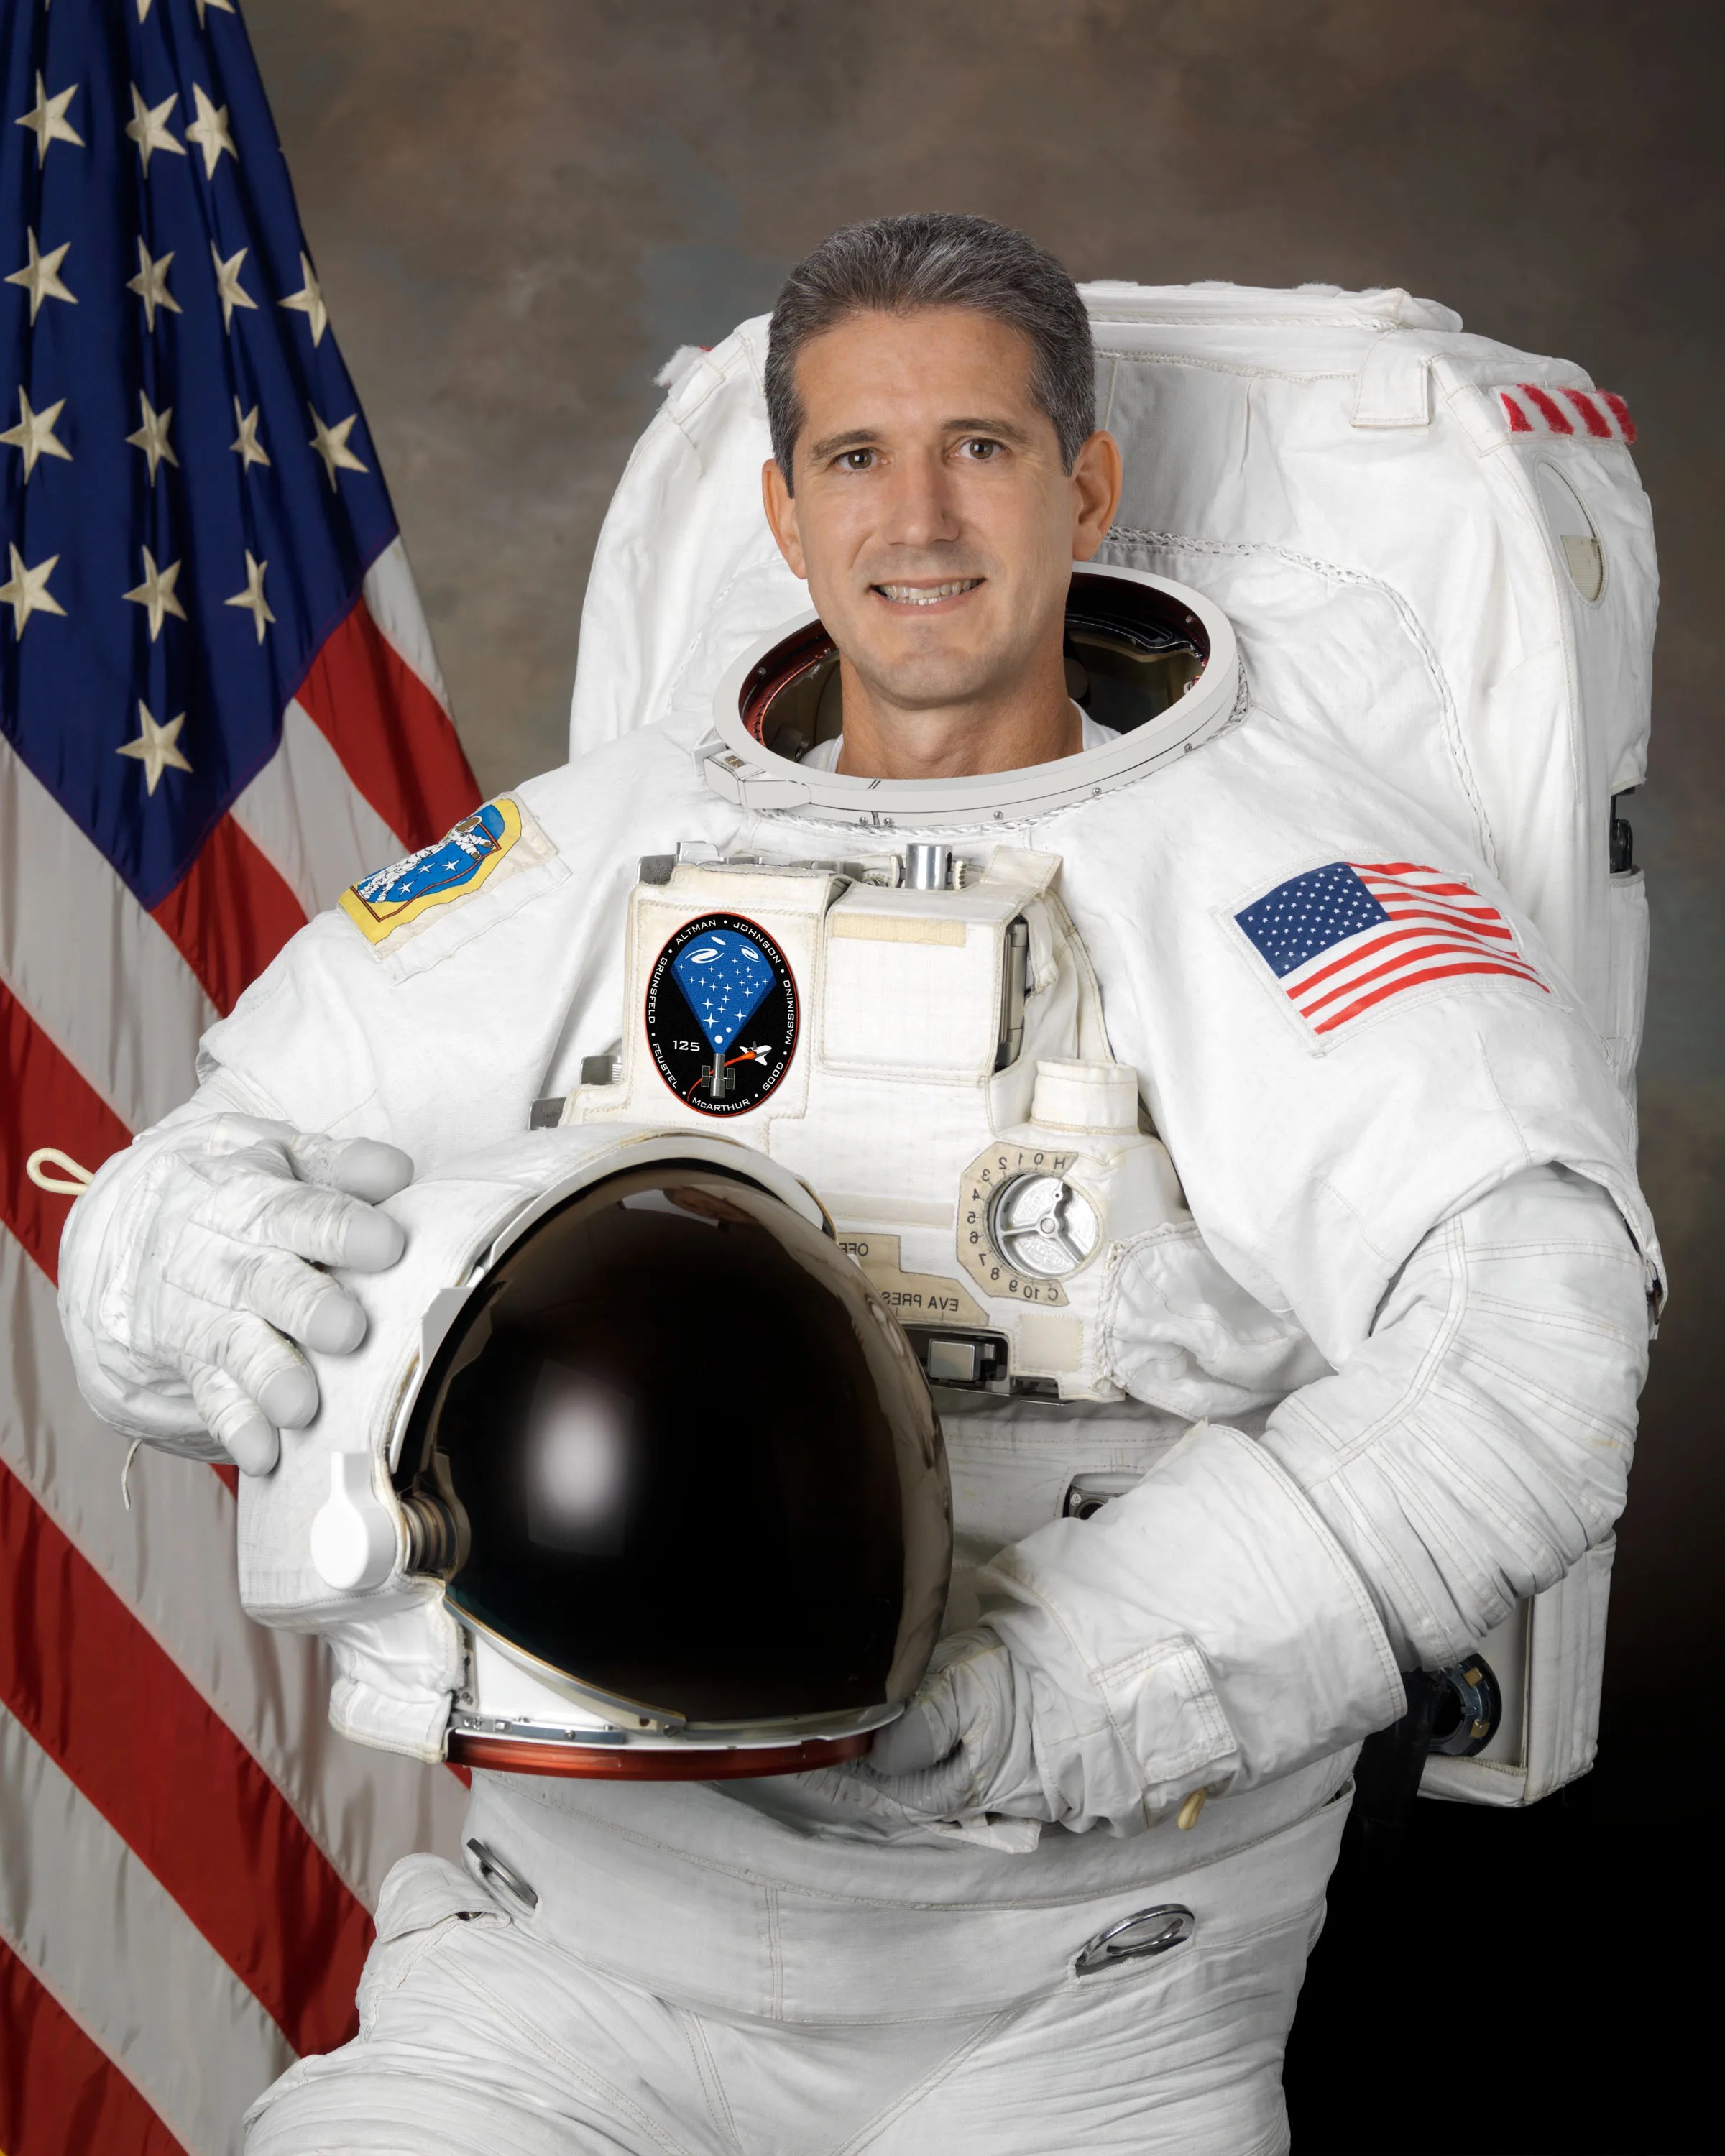 Official astronaut portrait of Michael Good.